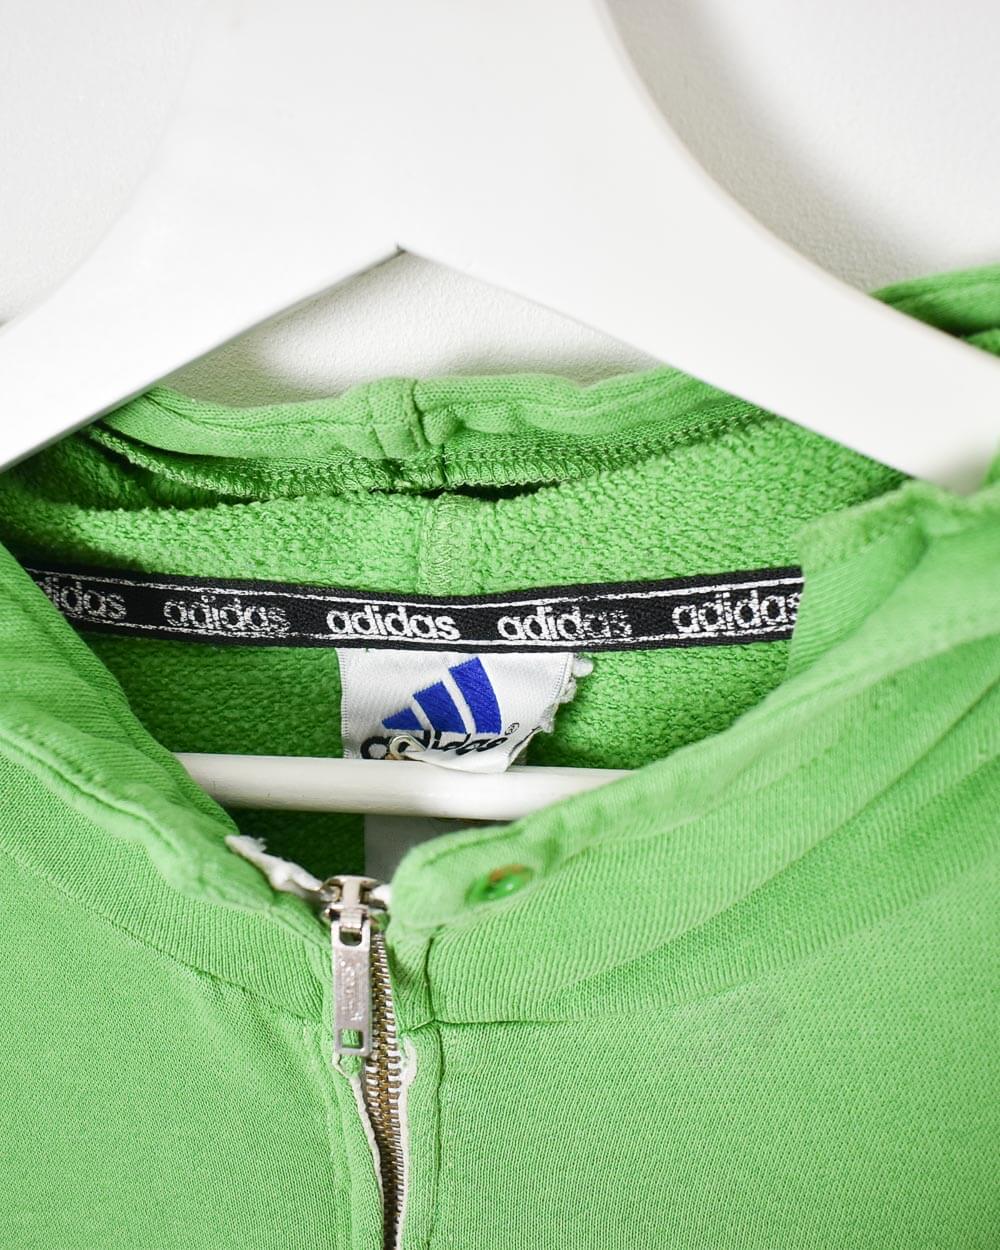 Green Adidas 1/4 Zip Hoodie - Medium